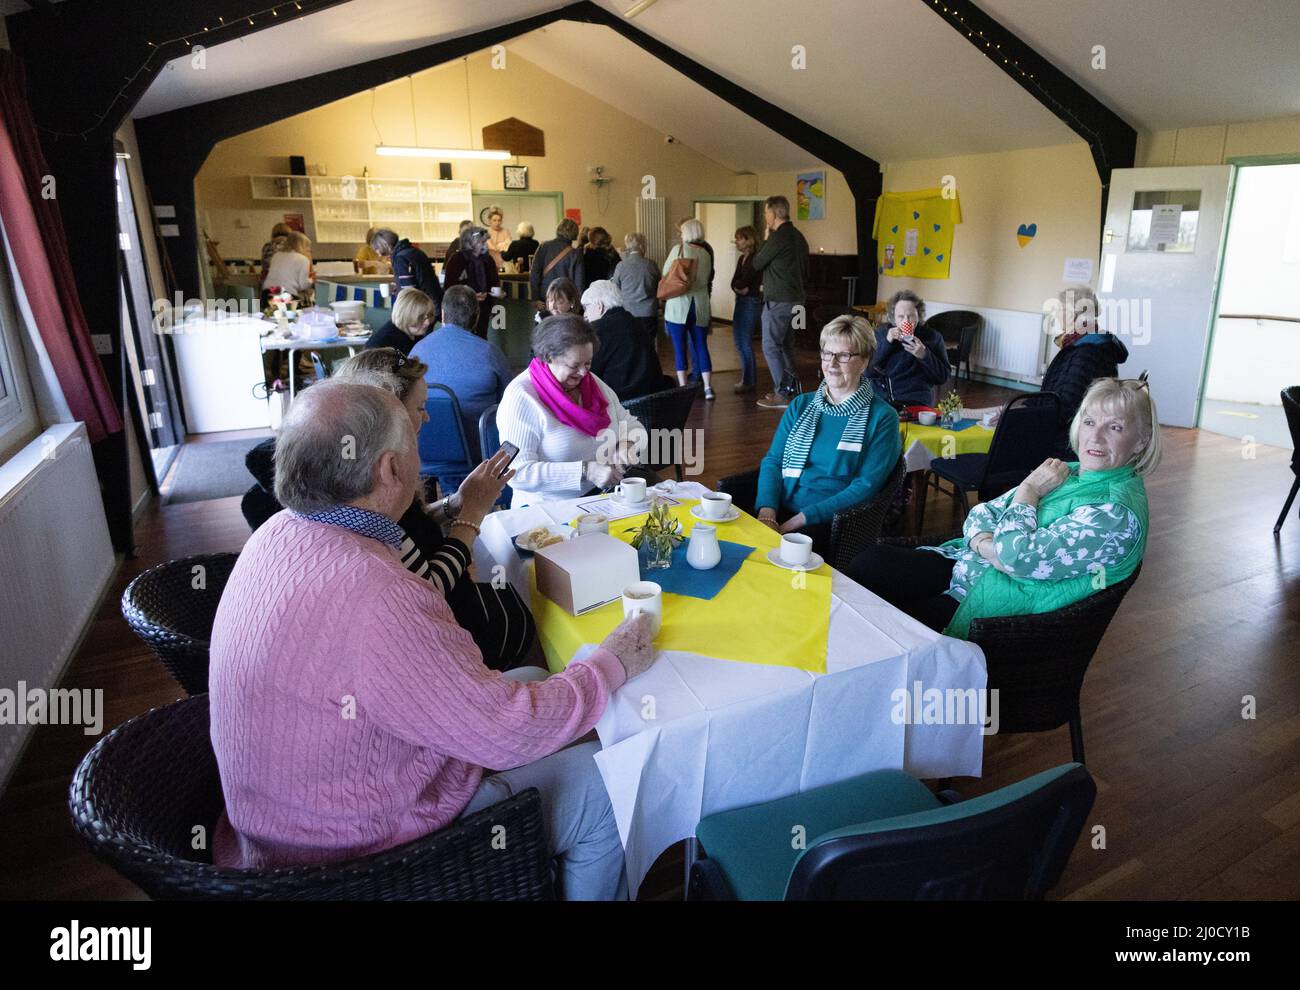 Ukraine hilft Großbritannien für den Ukraine-Krieg 2022; Charity Kaffee Morgen Fundraising für die Ukraine Flüchtlingshilfe, Stetchworth Village Hall, Cambridgeshire UK Stockfoto